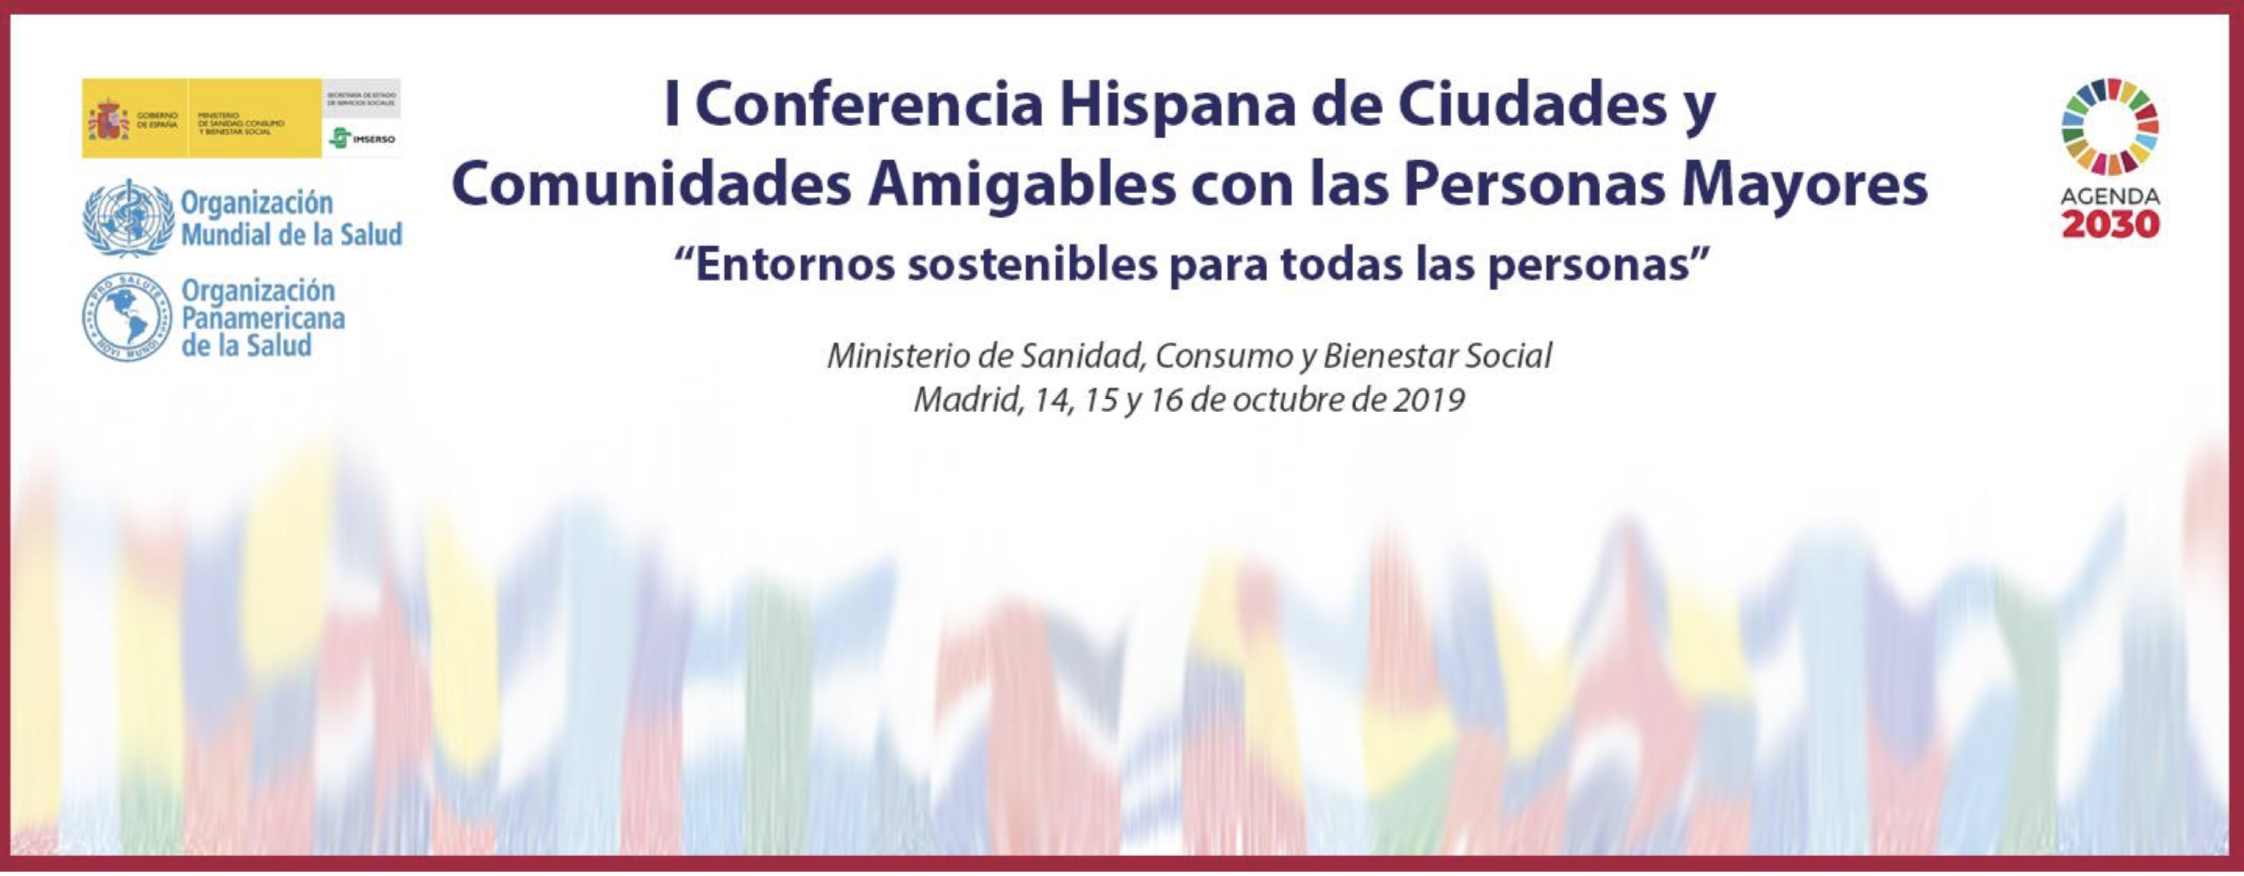 I Conferencia Hispana de Ciudades y Comunidades Amigables con las Personas Mayores